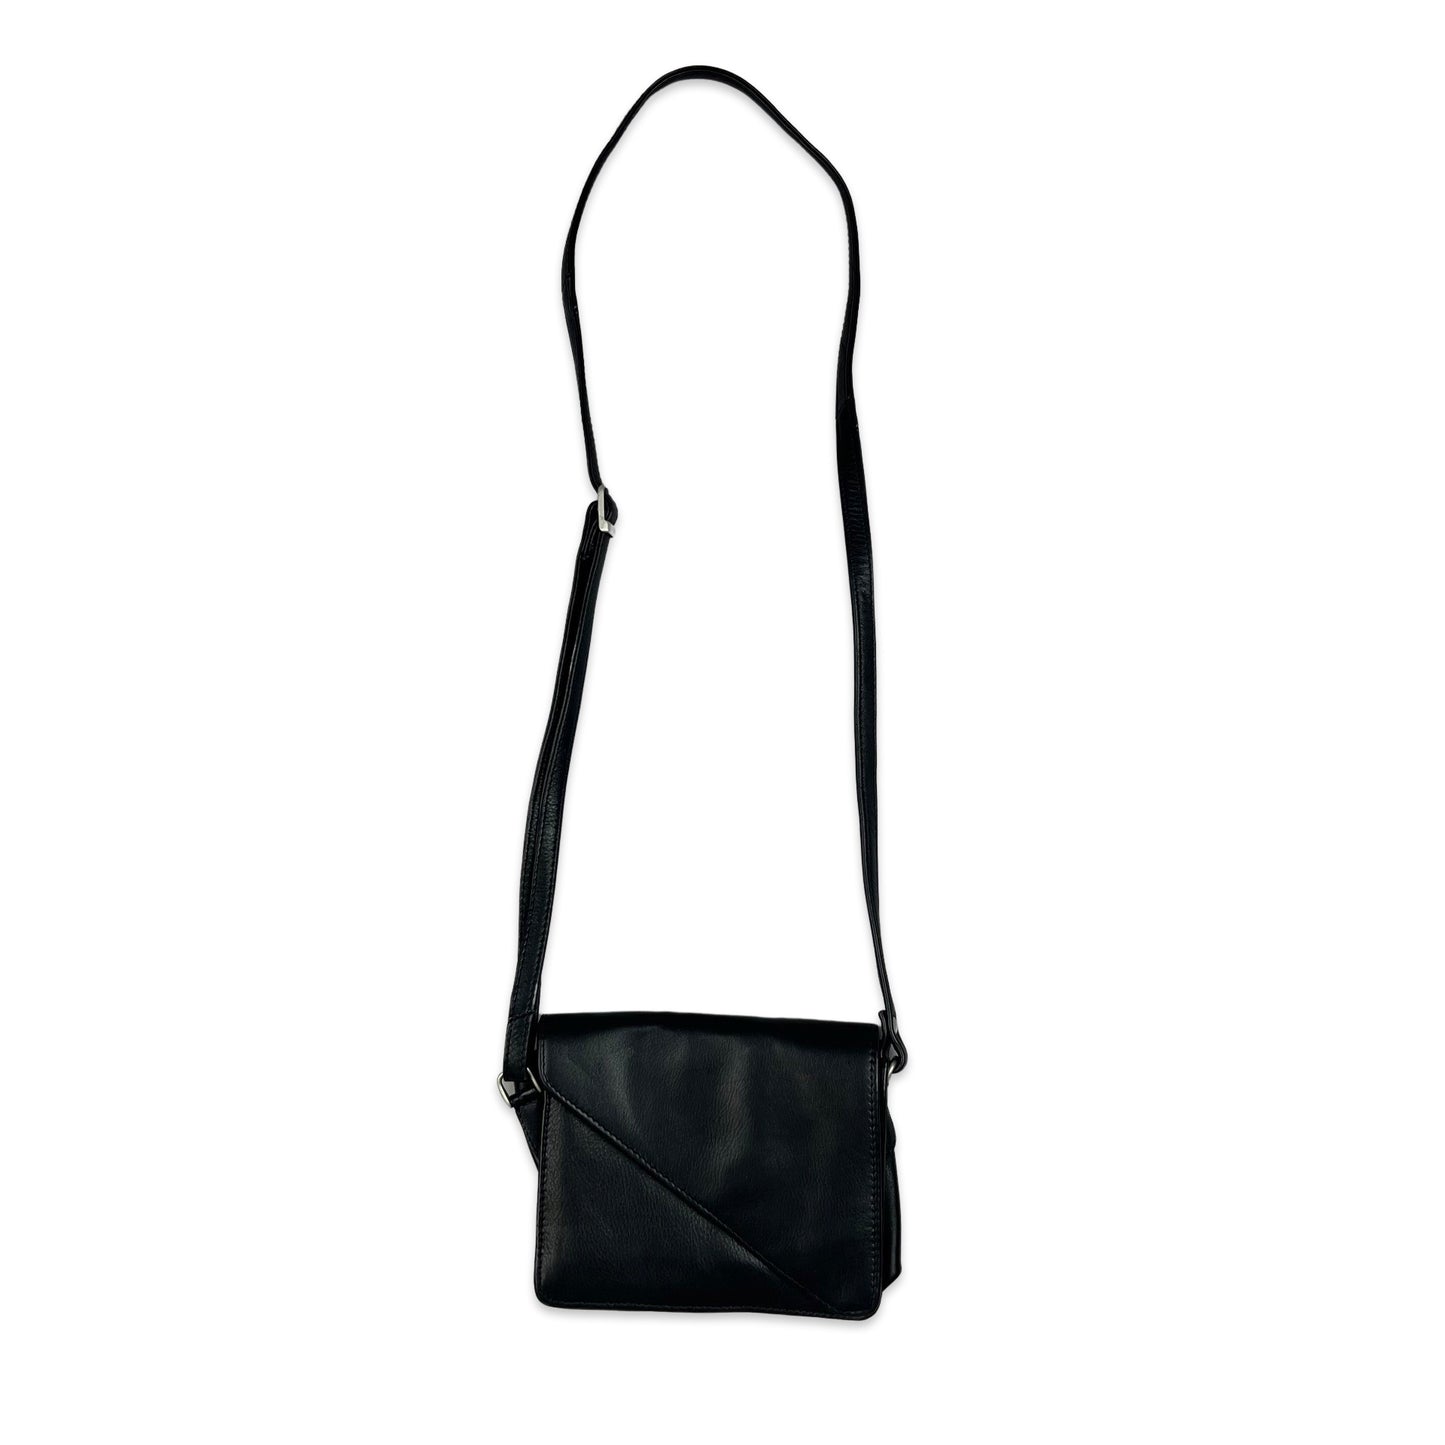 Vintage 90s Black Mini Crossbody Leather Handbag